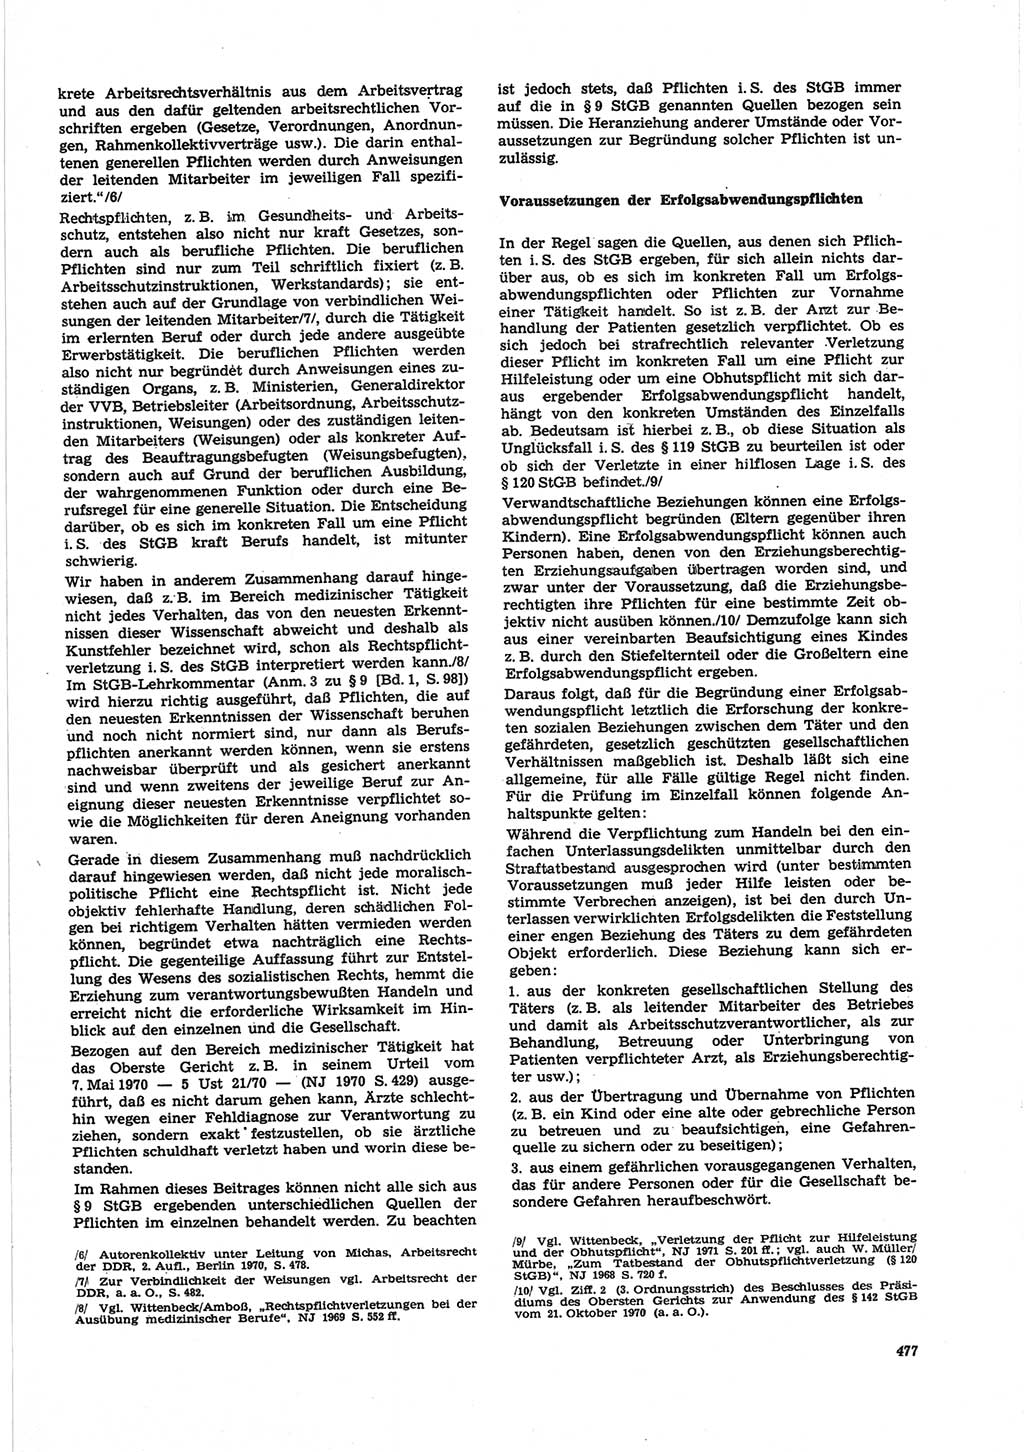 Neue Justiz (NJ), Zeitschrift für Recht und Rechtswissenschaft [Deutsche Demokratische Republik (DDR)], 25. Jahrgang 1971, Seite 477 (NJ DDR 1971, S. 477)